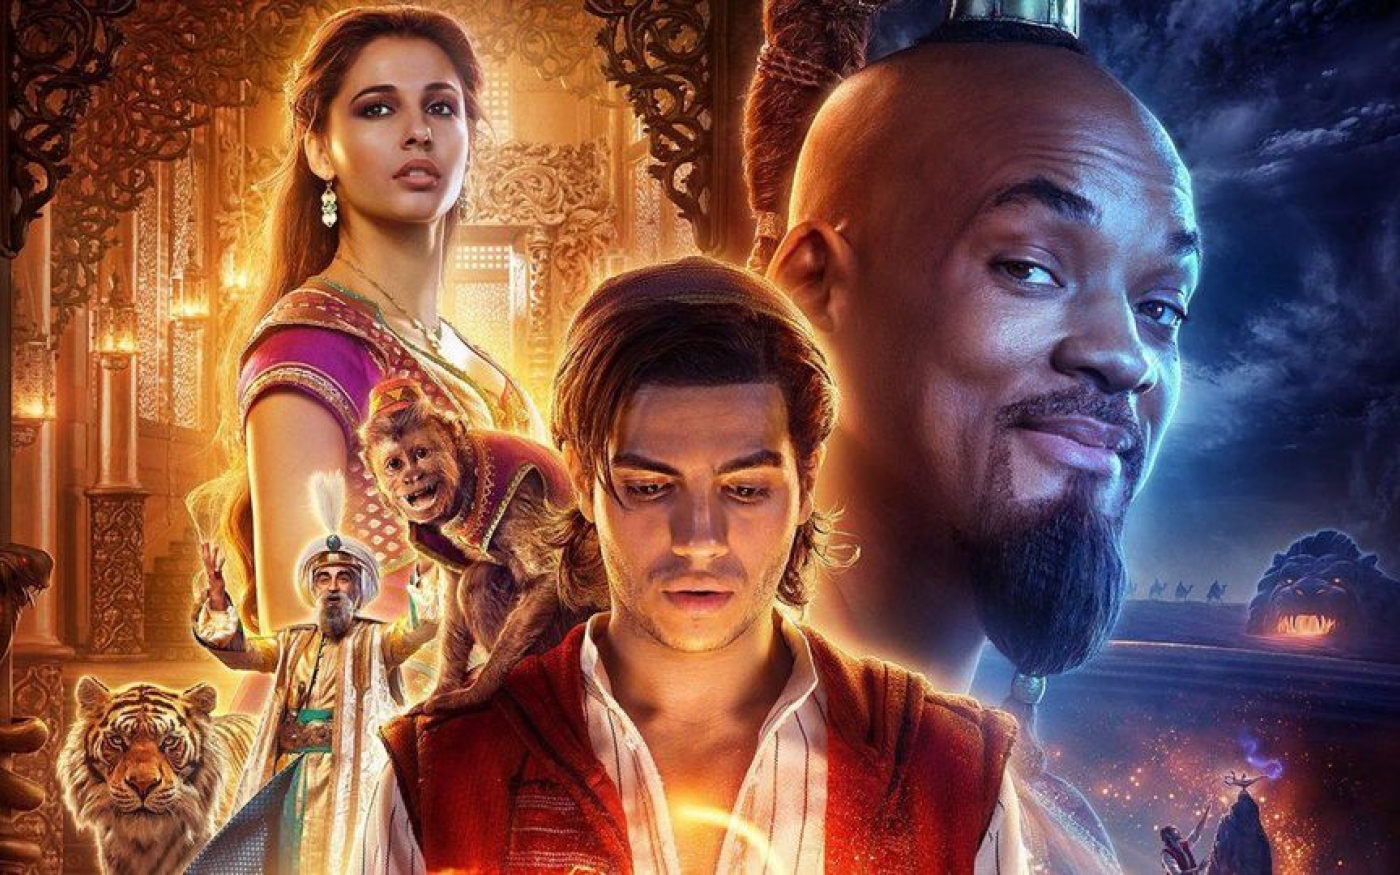 Une image promotionnelle pour le nouveau film de Disney, la version 2019 d’Aladdin...